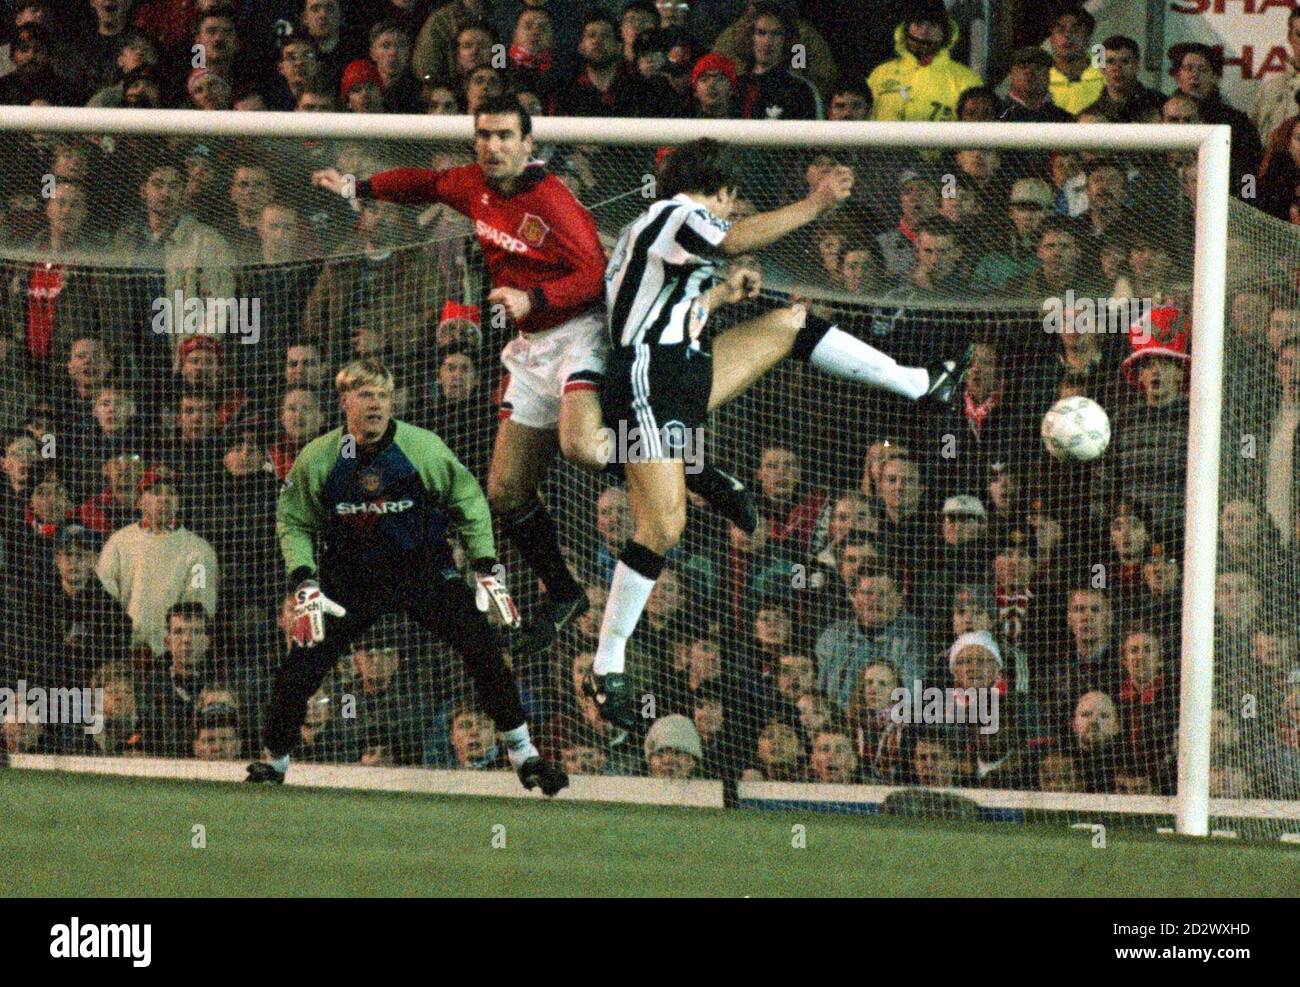 Eric Cantona di Manchester Utd e David Ginola di Newcastle sono seguiti in  una sfida aerea, da Peter Smeichel, nella partita di premiership di stasera  (Mer) a Old Trafford Foto stock -